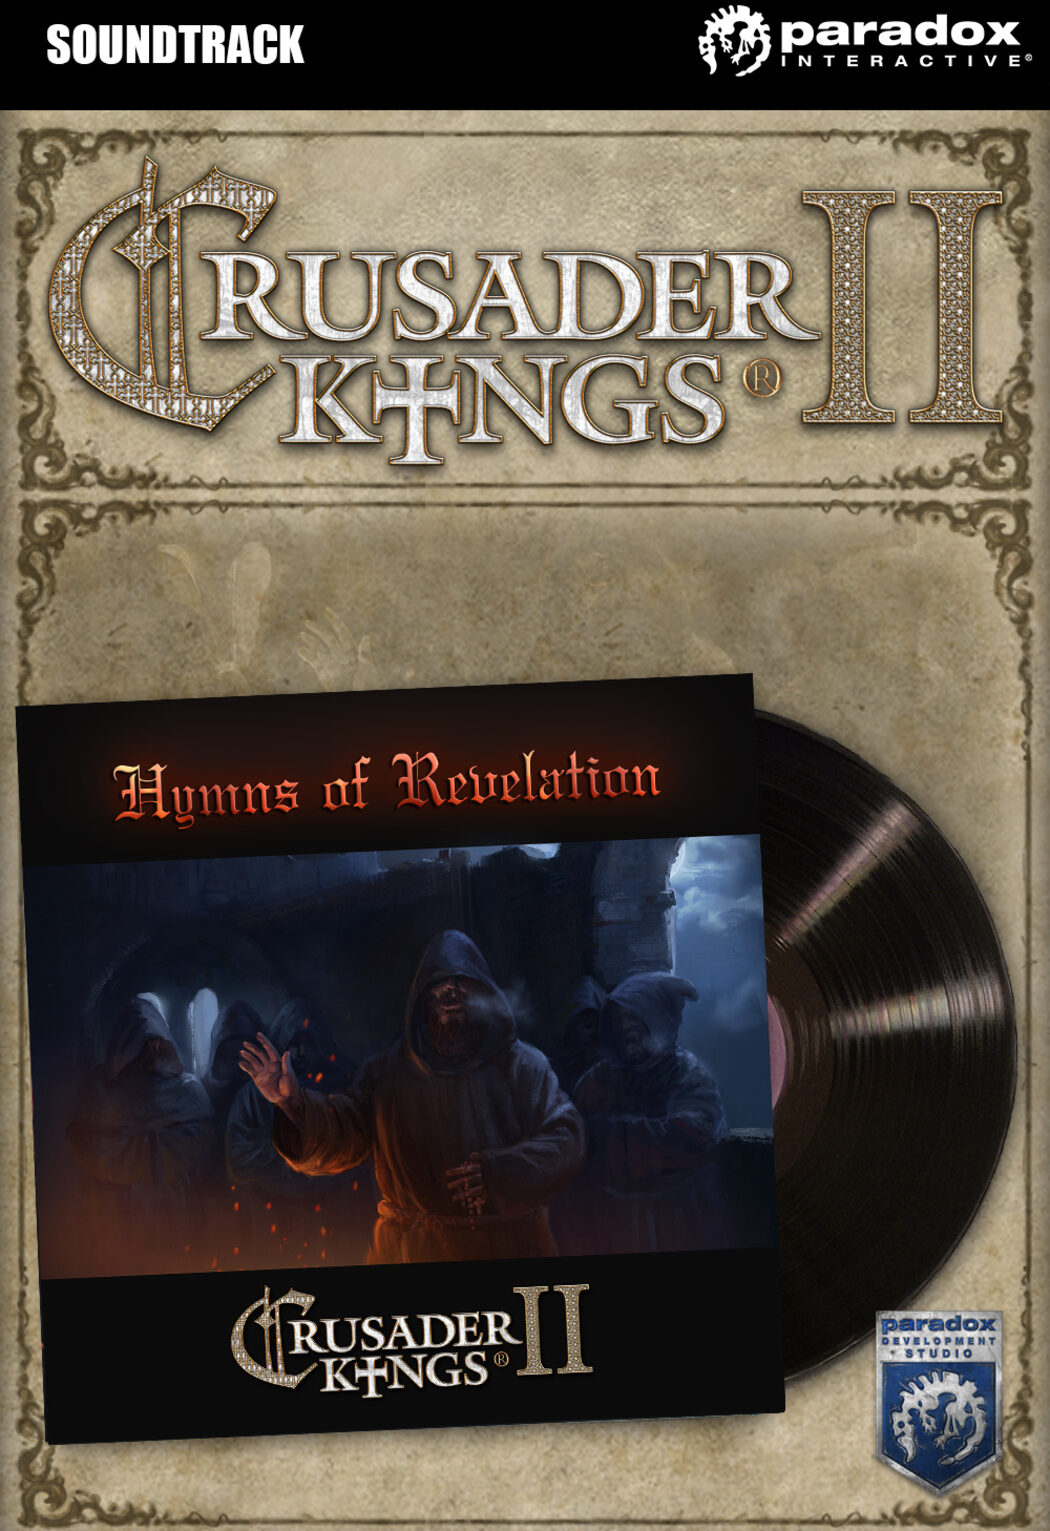 crusader kings 2 soundtrack